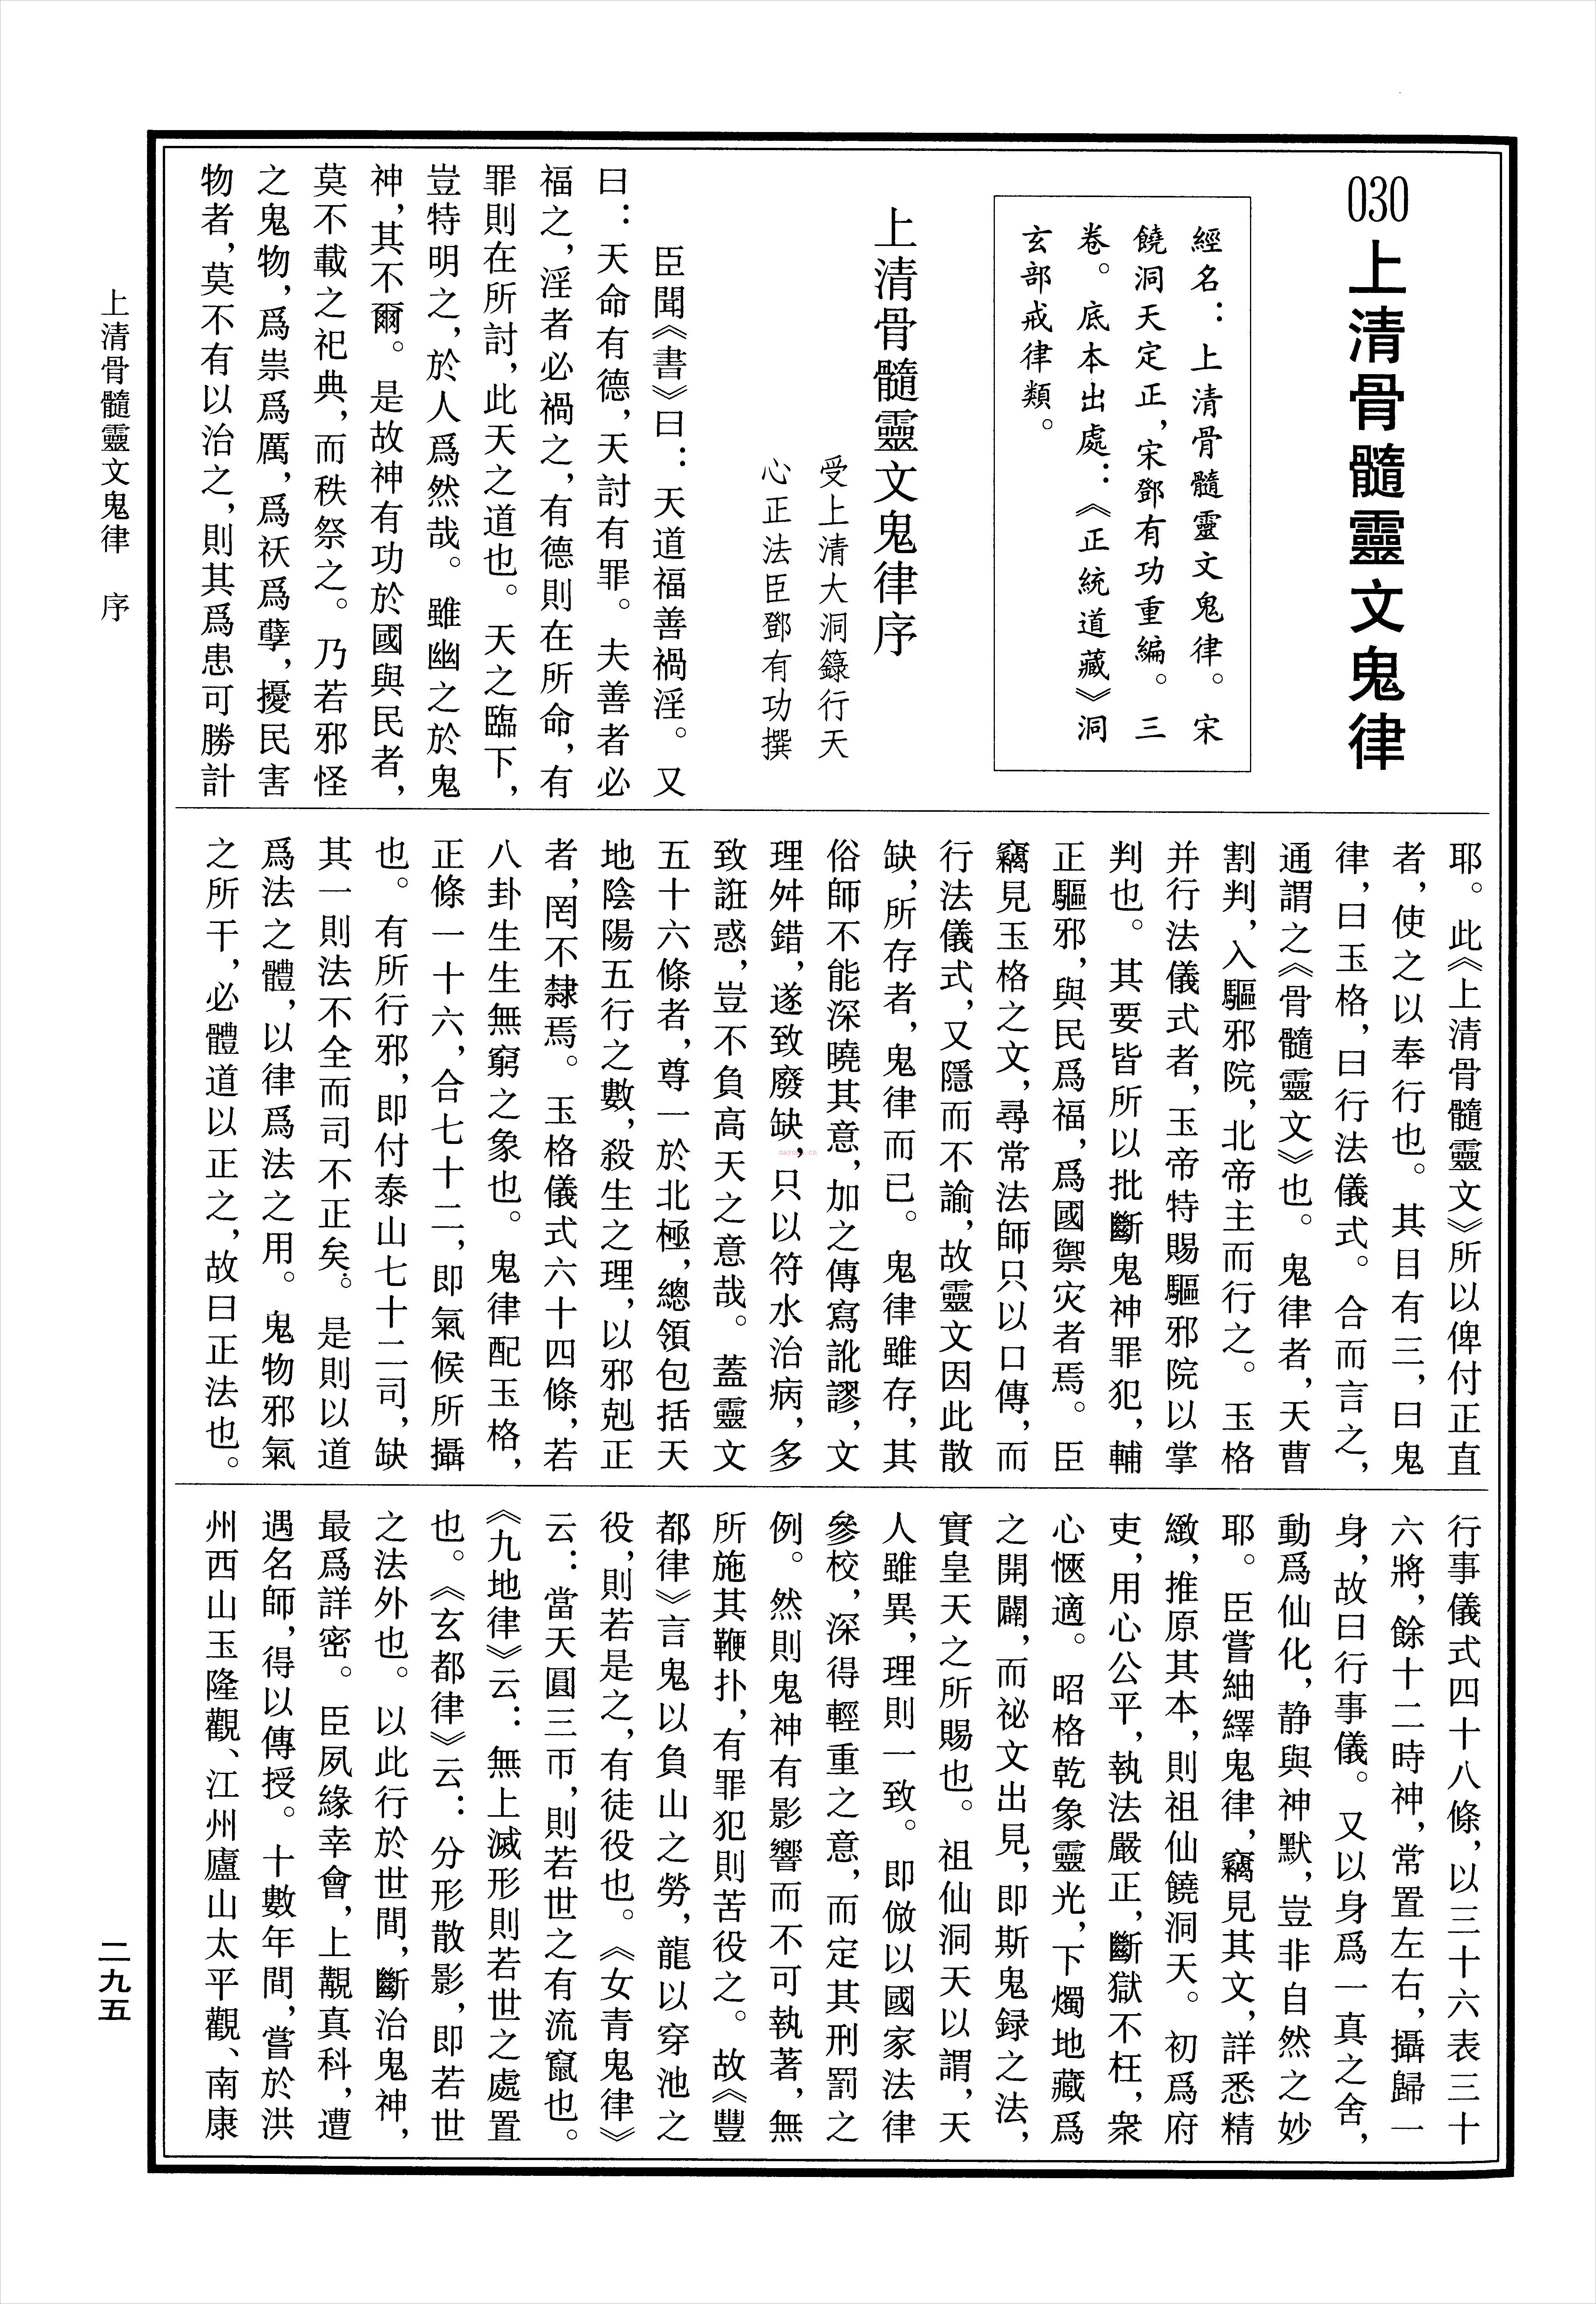 上清骨髓灵文鬼律13页.pdf 百度网盘资源